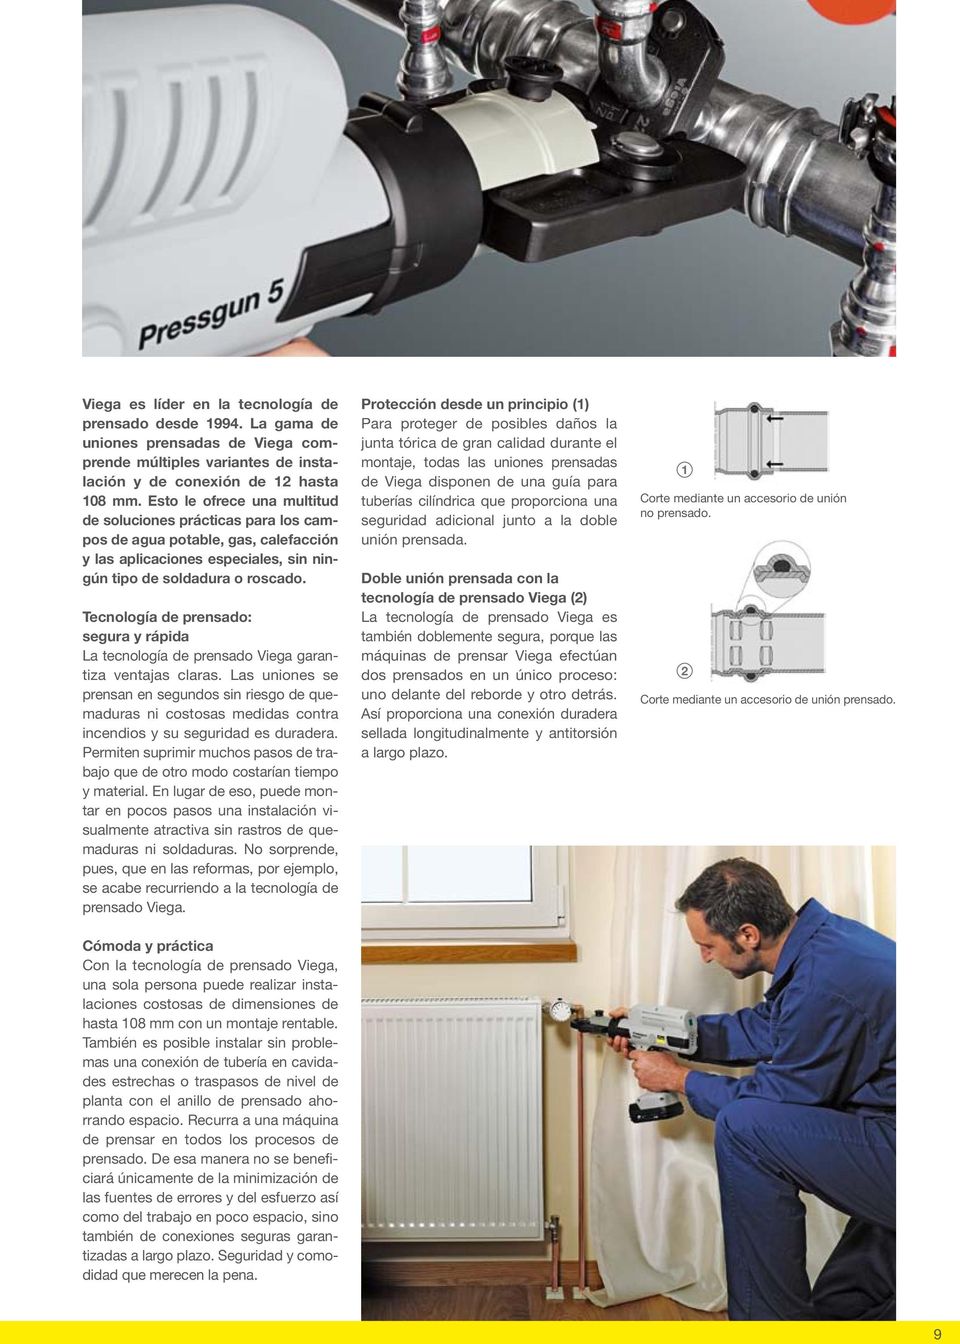 Tecnología de prensado: segura y rápida La tecnología de prensado Viega garantiza ventajas claras.